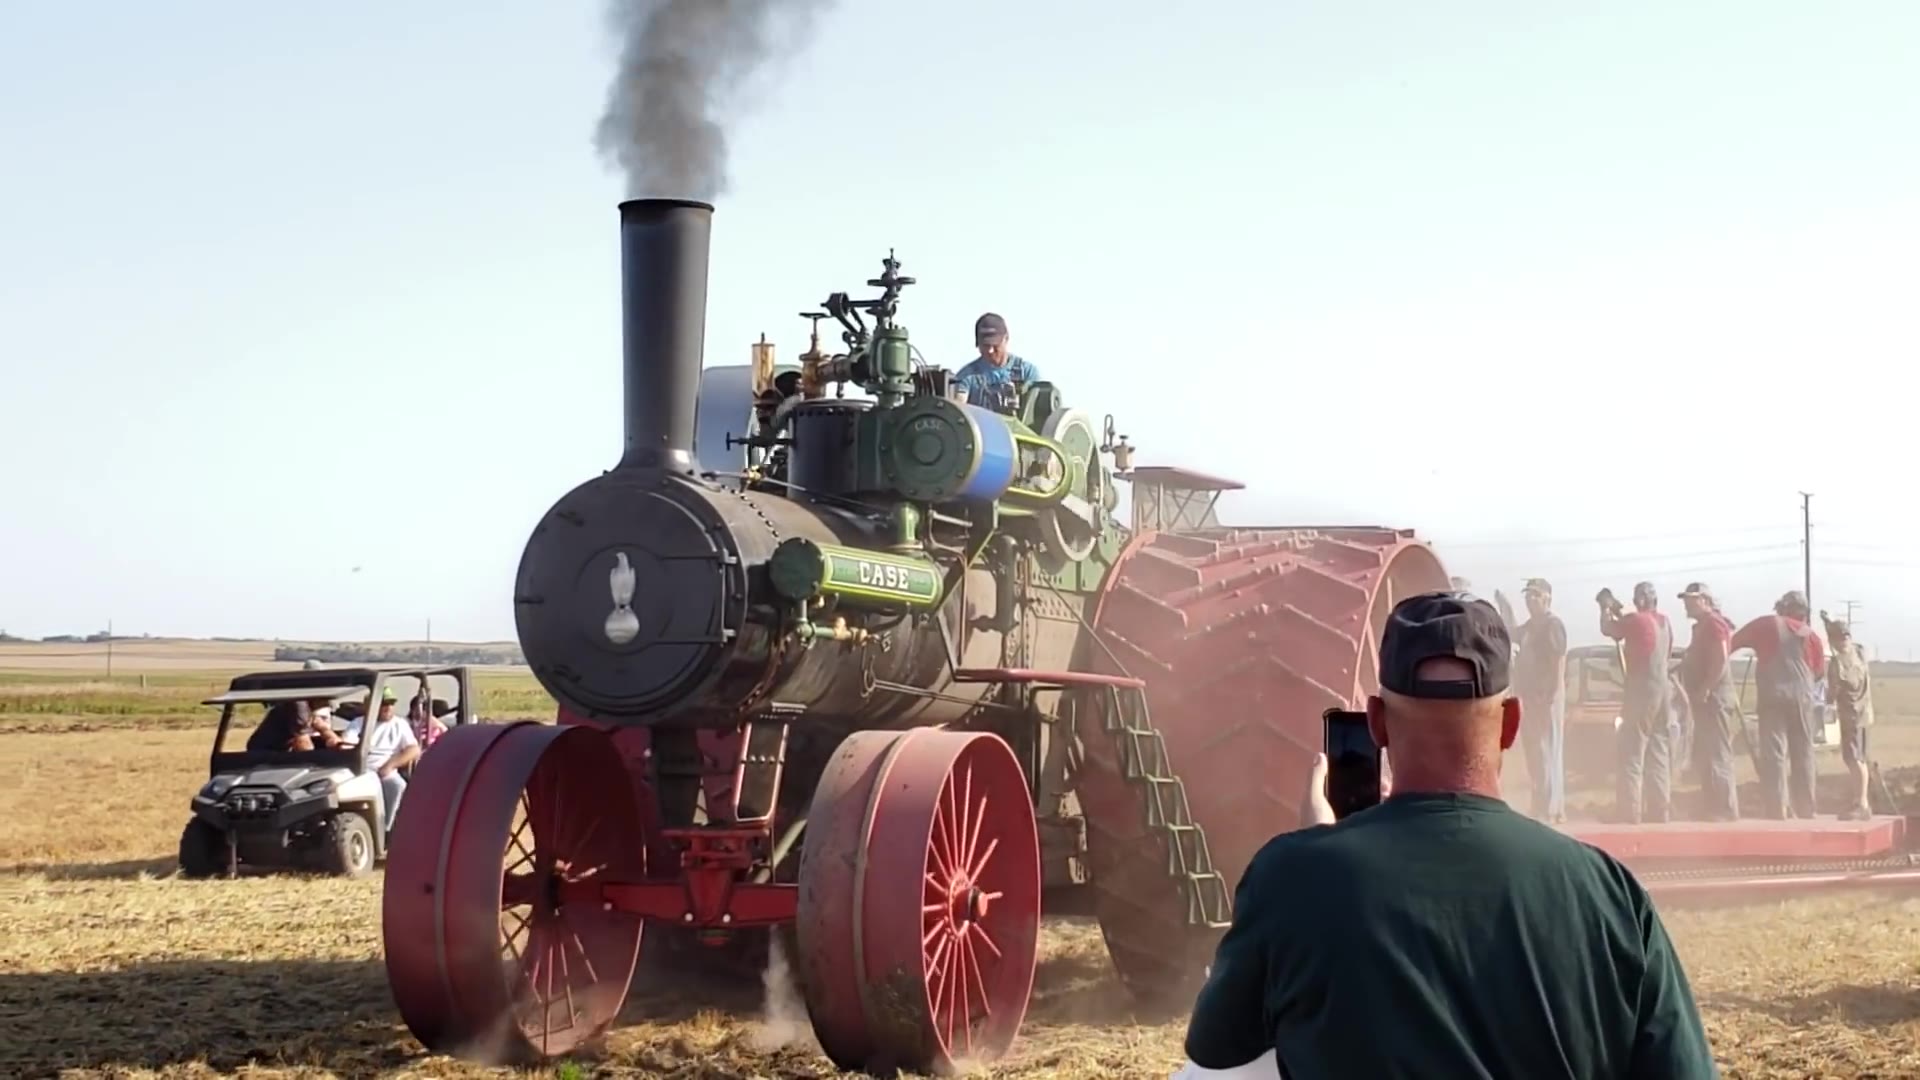 150马力的巨型古董蒸汽拖拉机在田间开垦土地